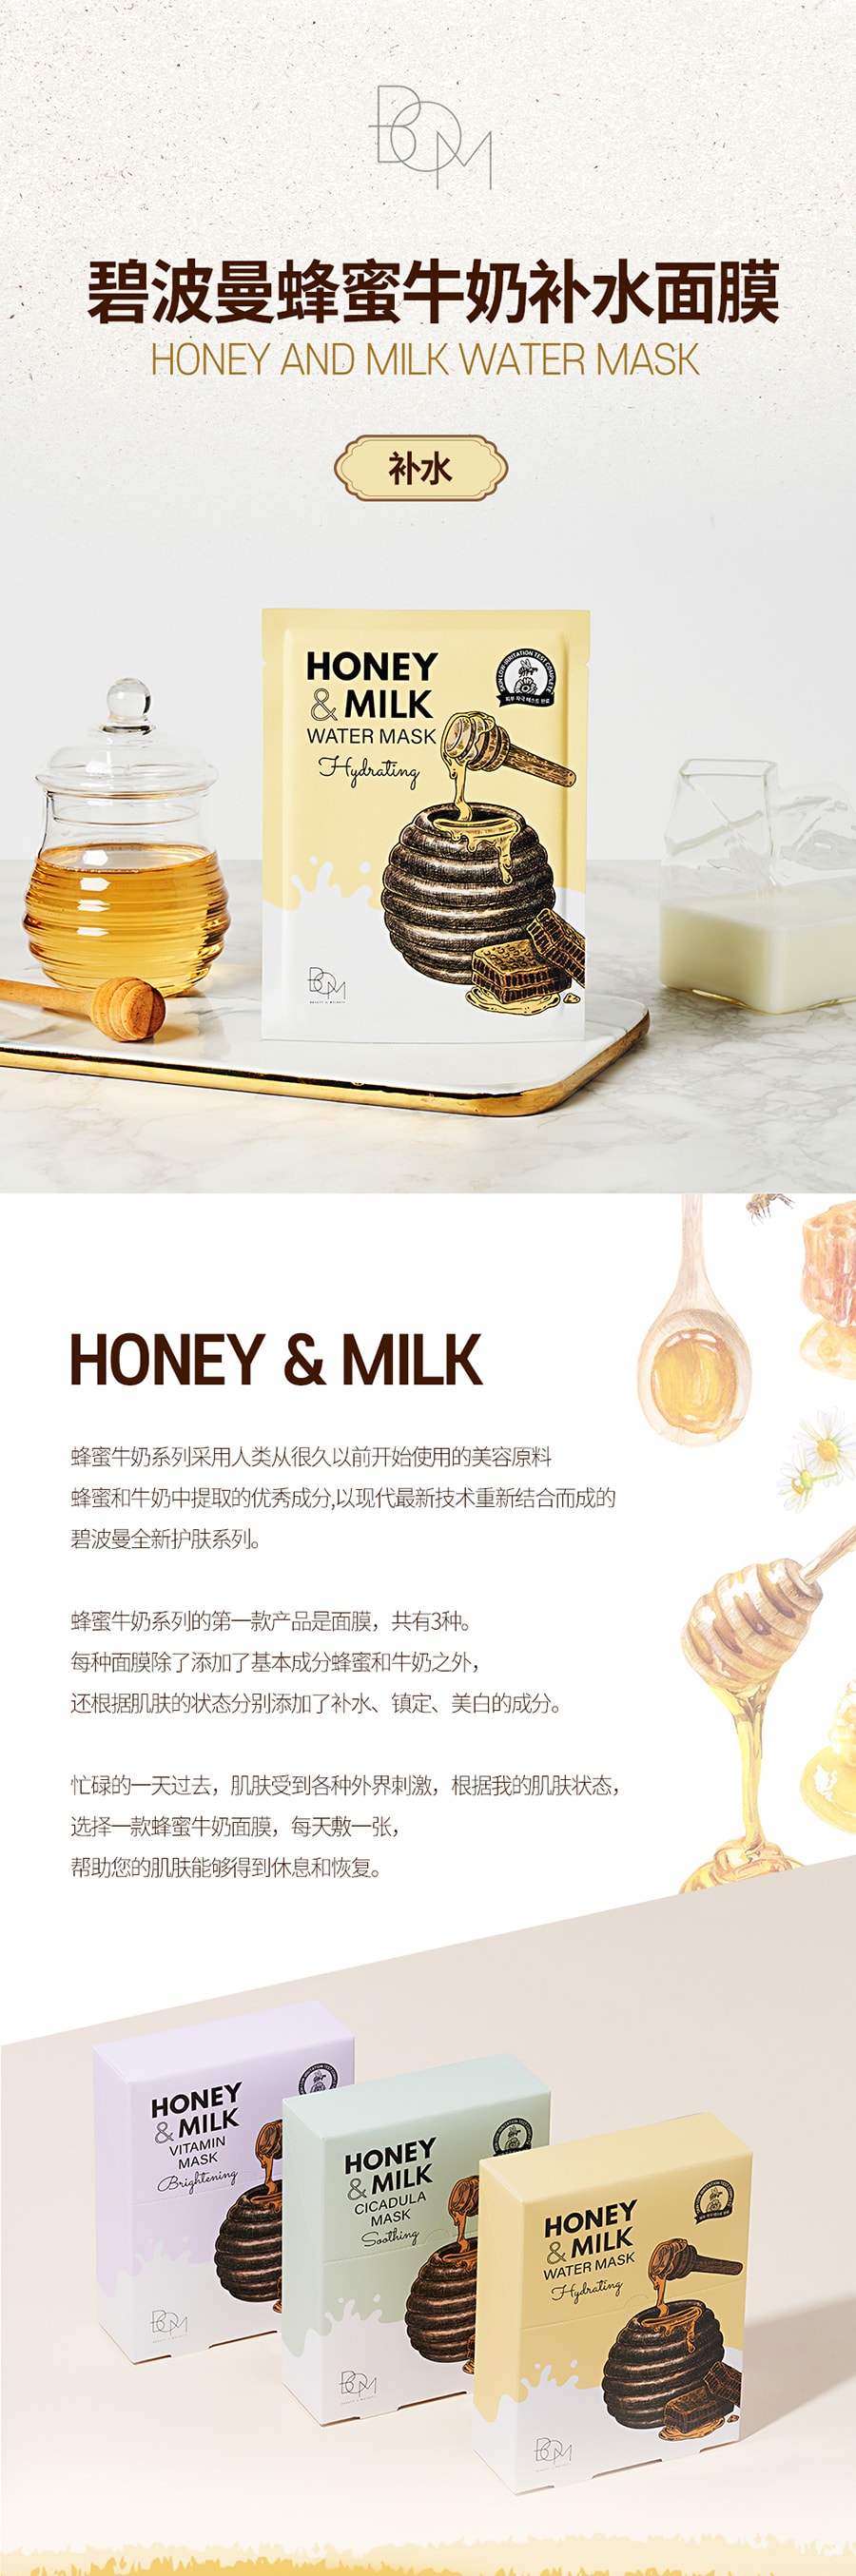 韩国BOM碧波曼清润超强补水面膜 舒缓保湿 蜂蜜牛奶透亮敏感肌友好 10片/250g